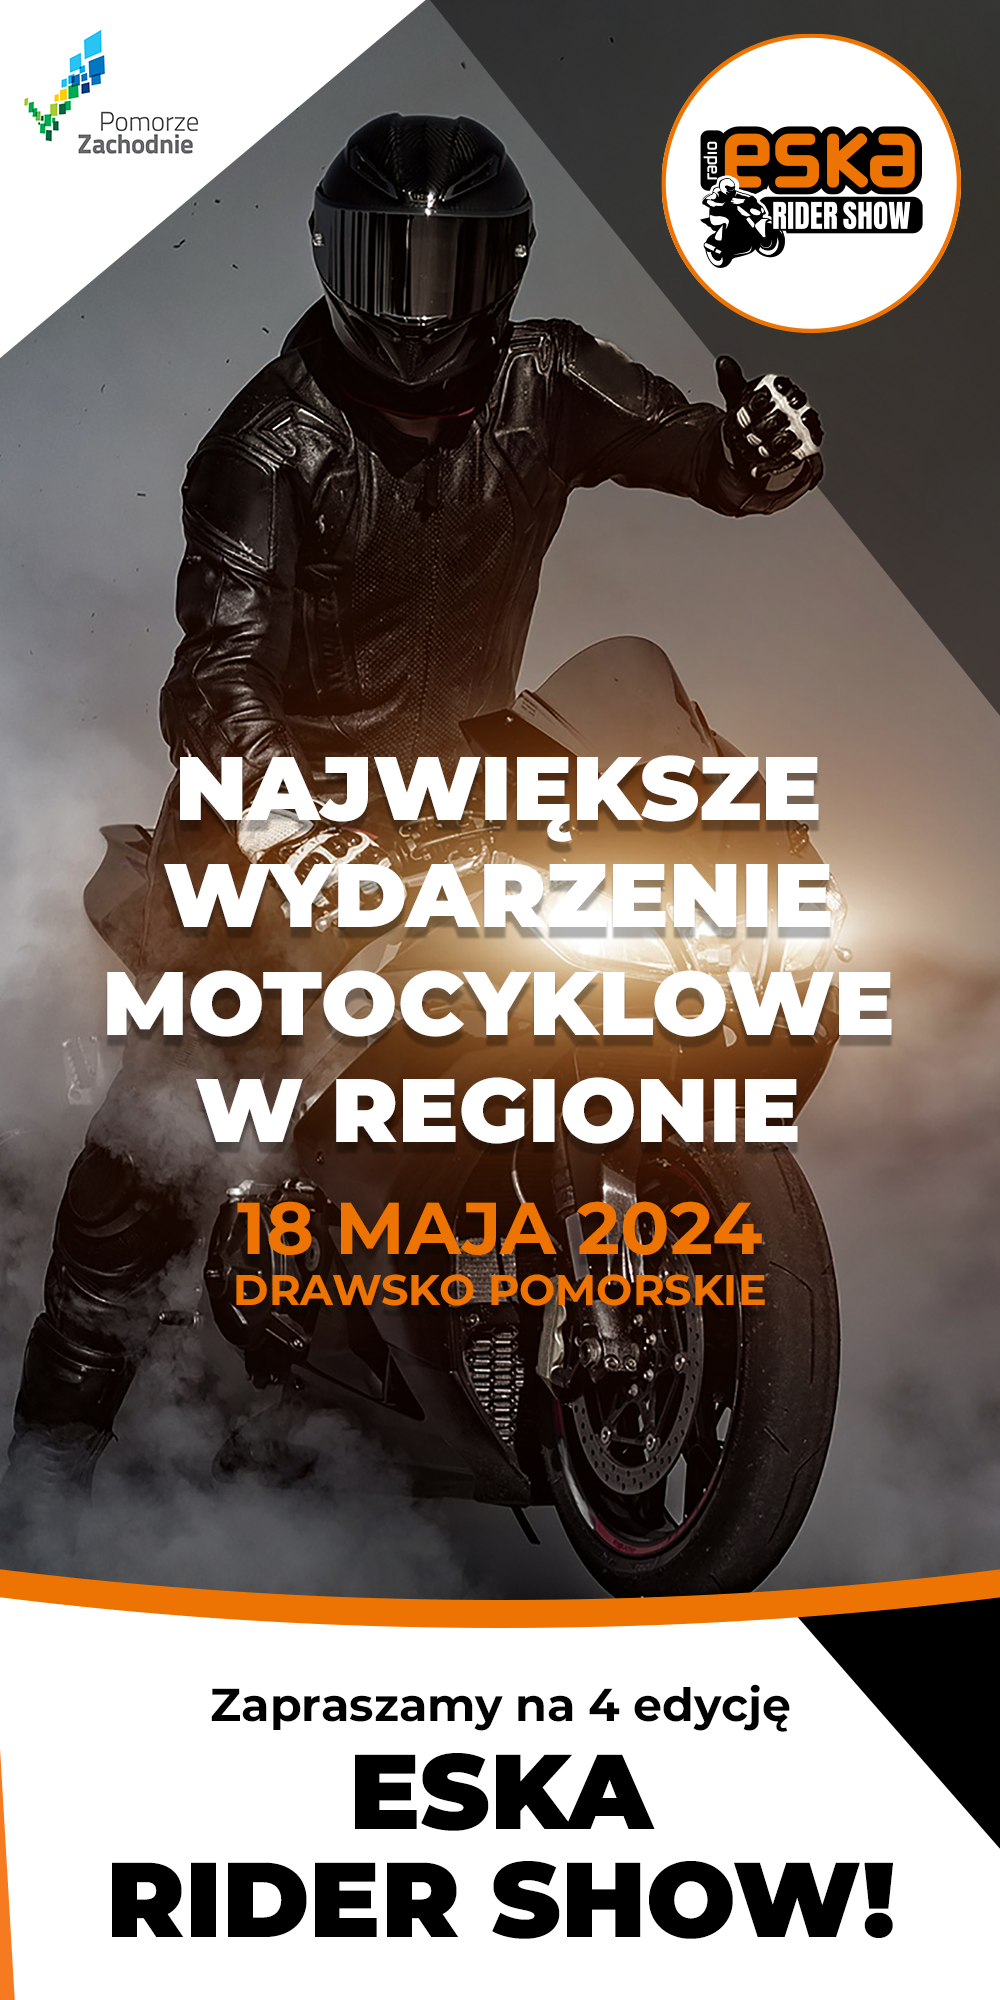 ESKA Rider Show – największy event motocyklowy na Pomorzu Zachodnim!